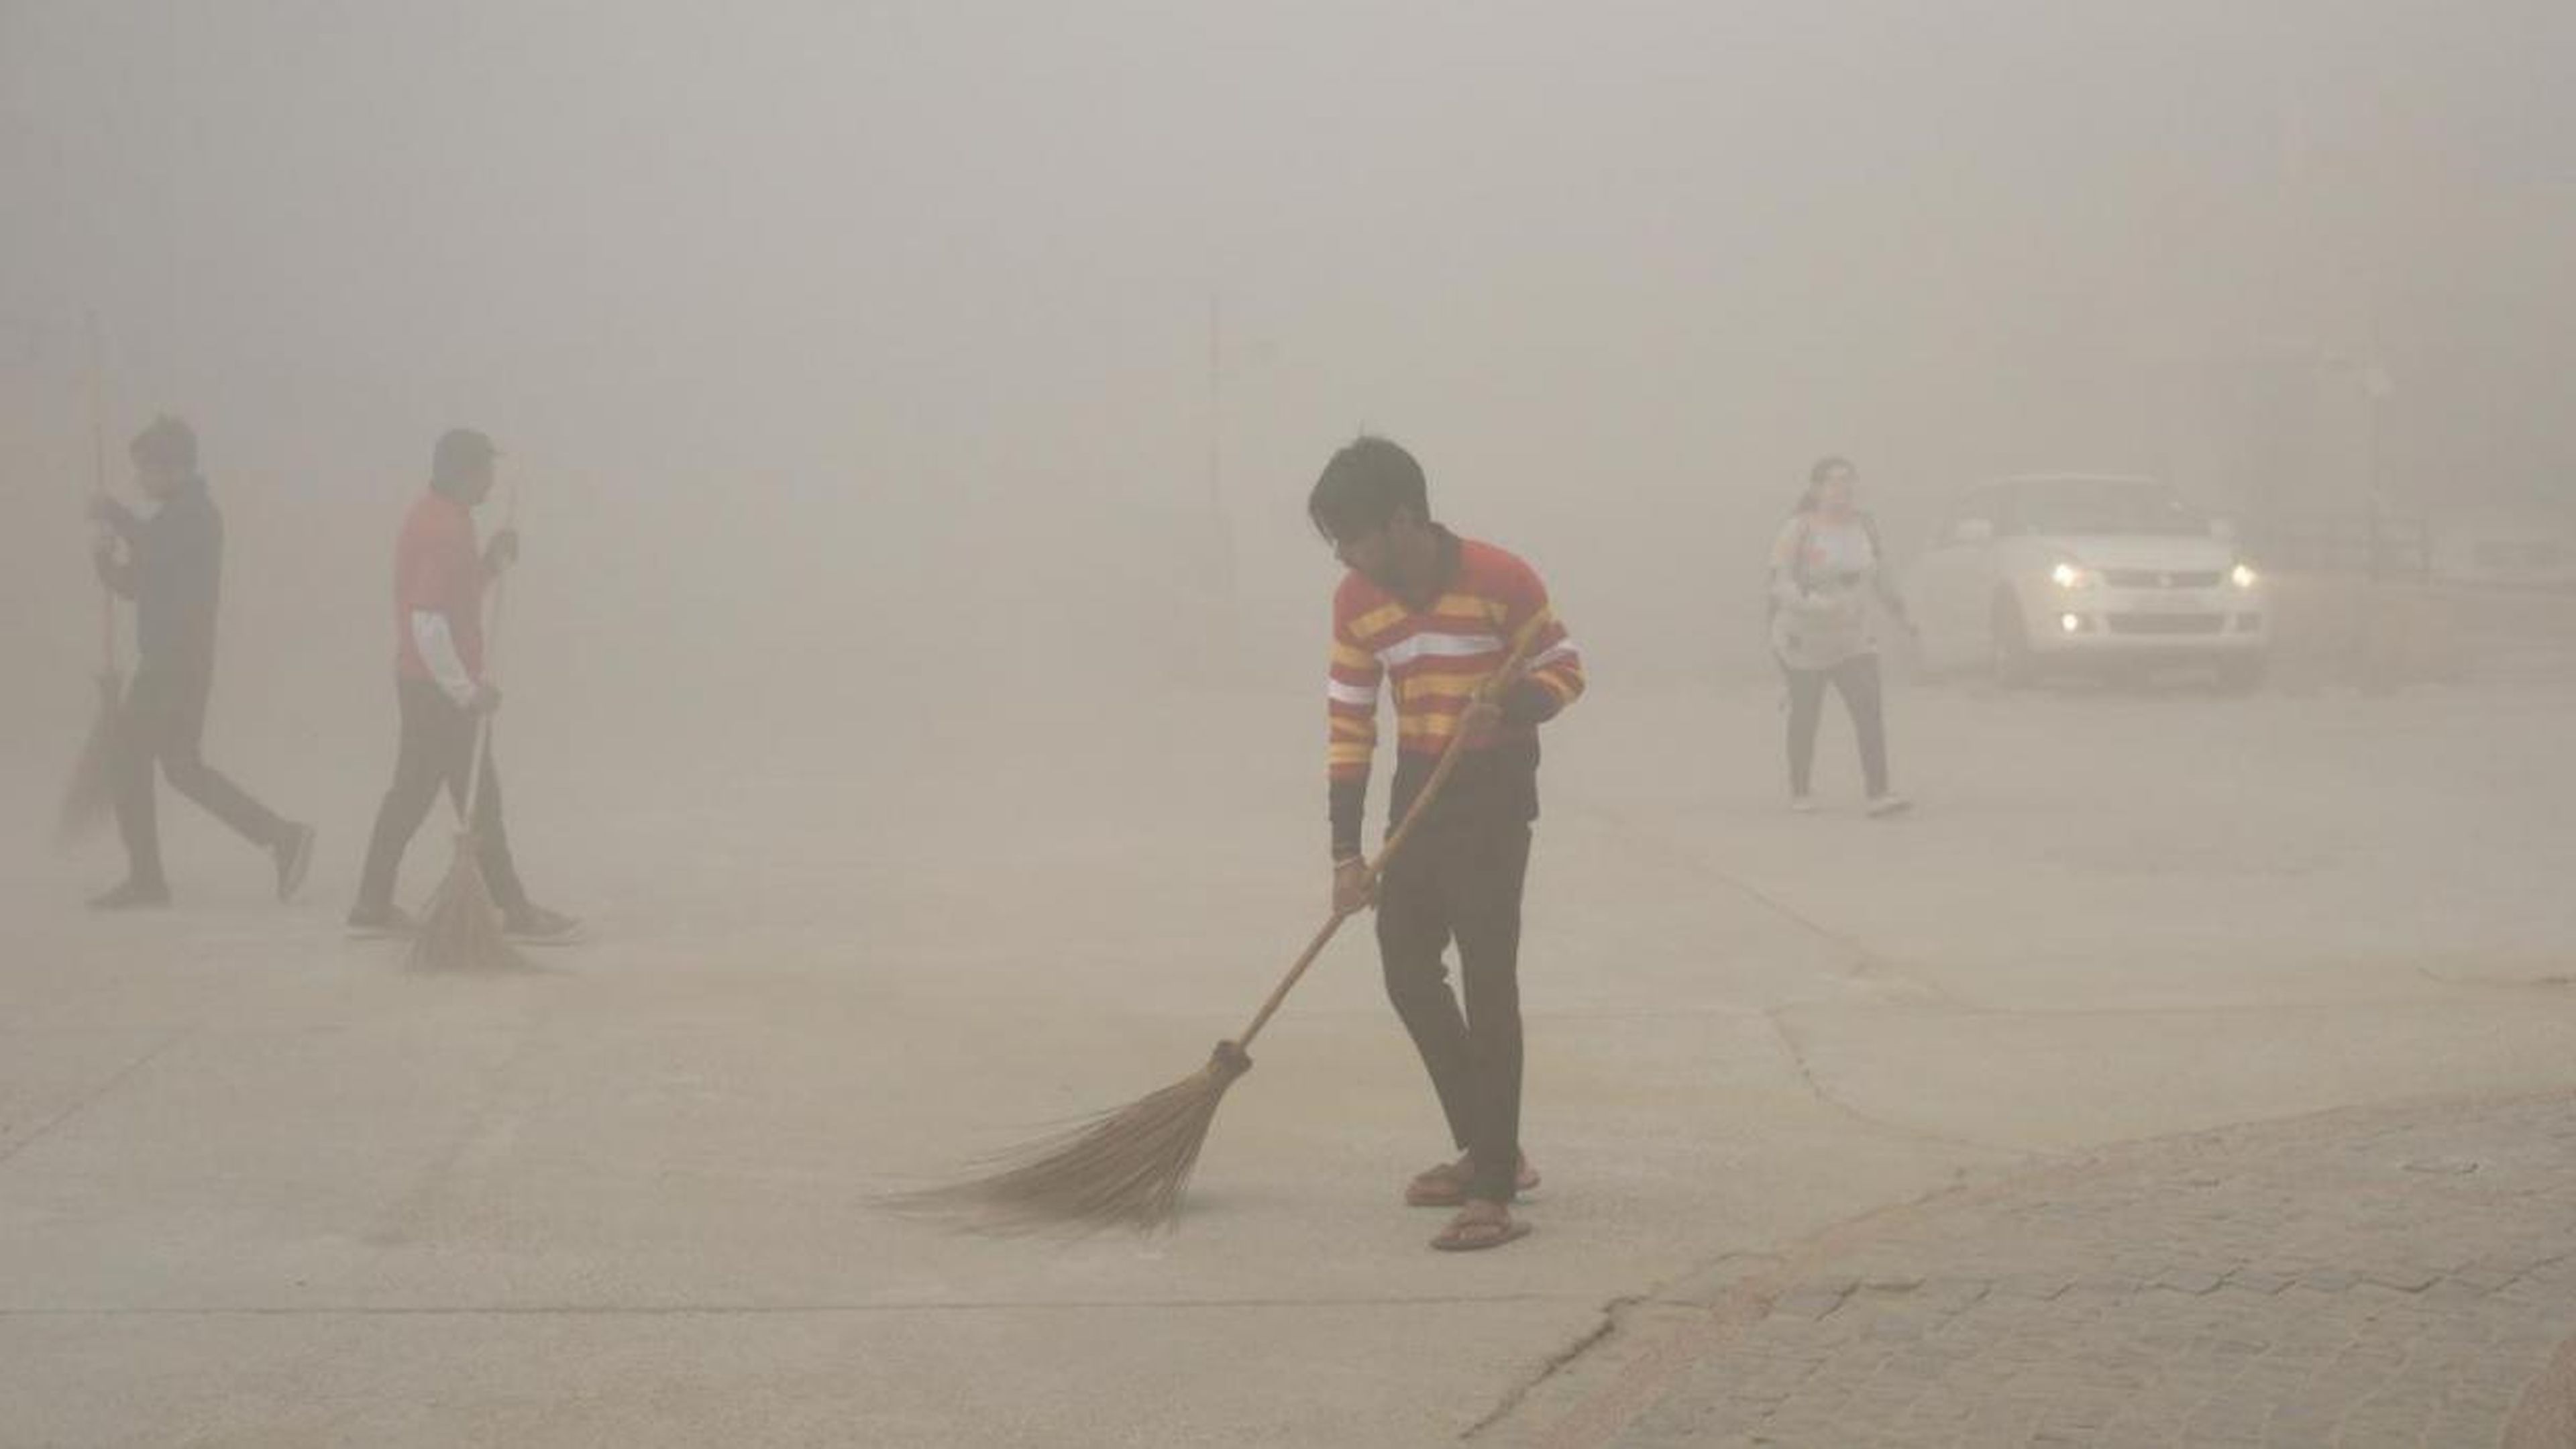 Trabajadores indios usan escobas para barrer el polvo en la niebla matutina en el Gran Noida, cerca de Nueva Delhi, India, el 10 de noviembre de 2017.